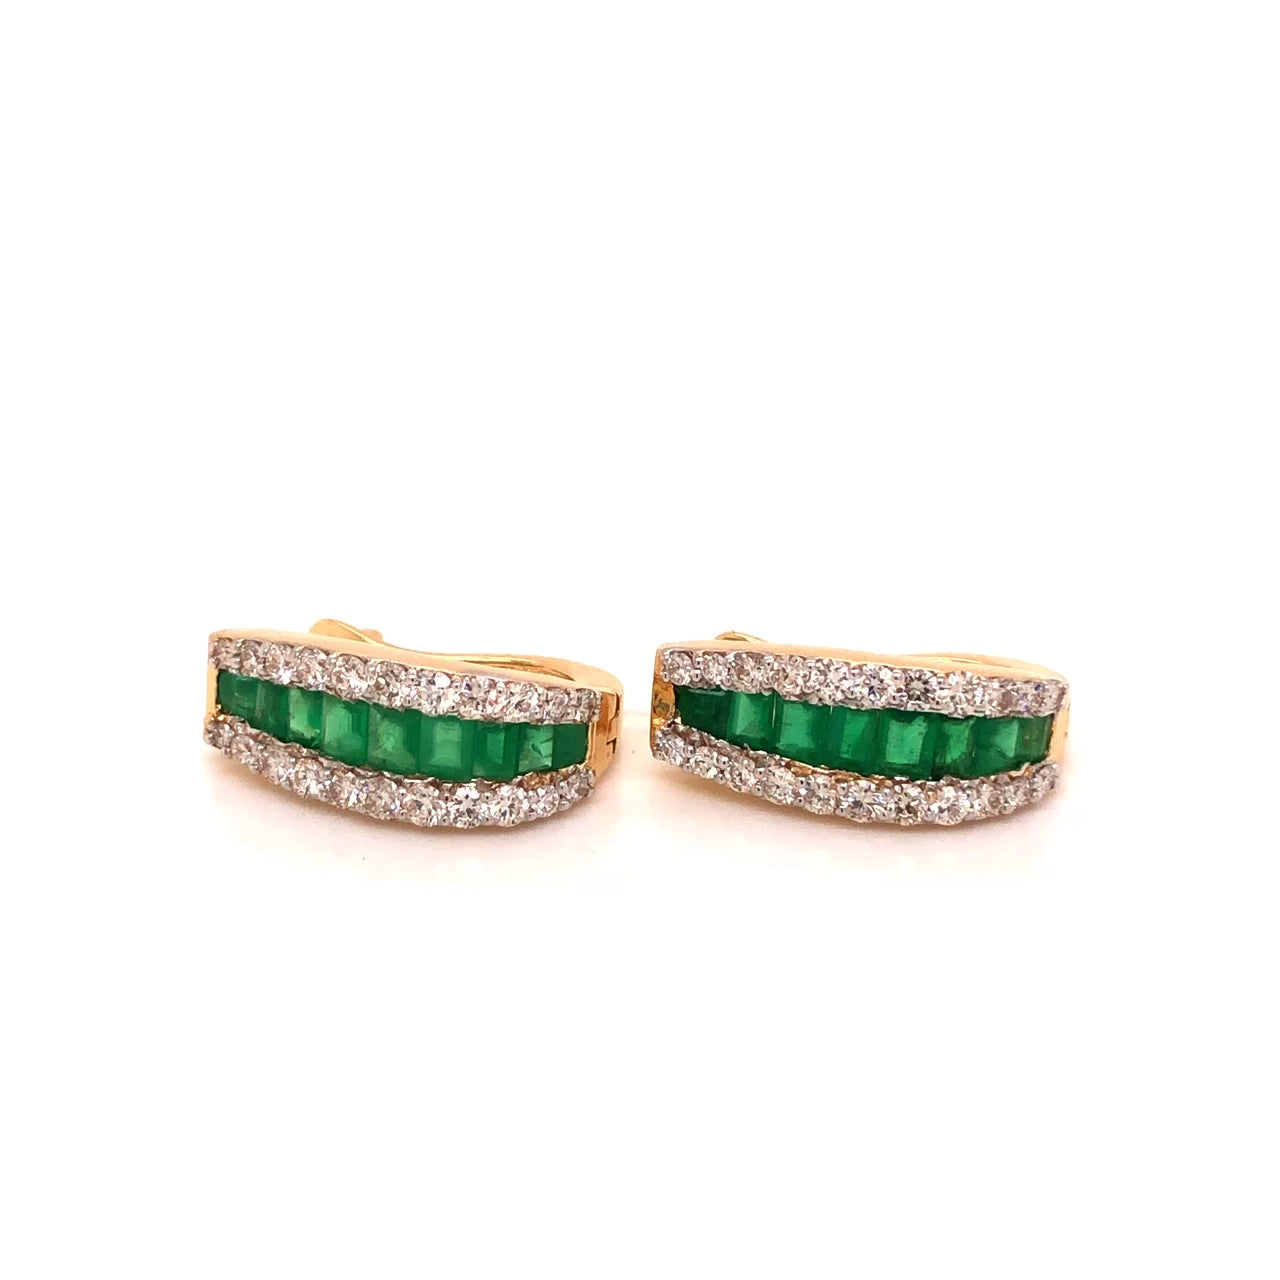 Huggie earrings with gemstones